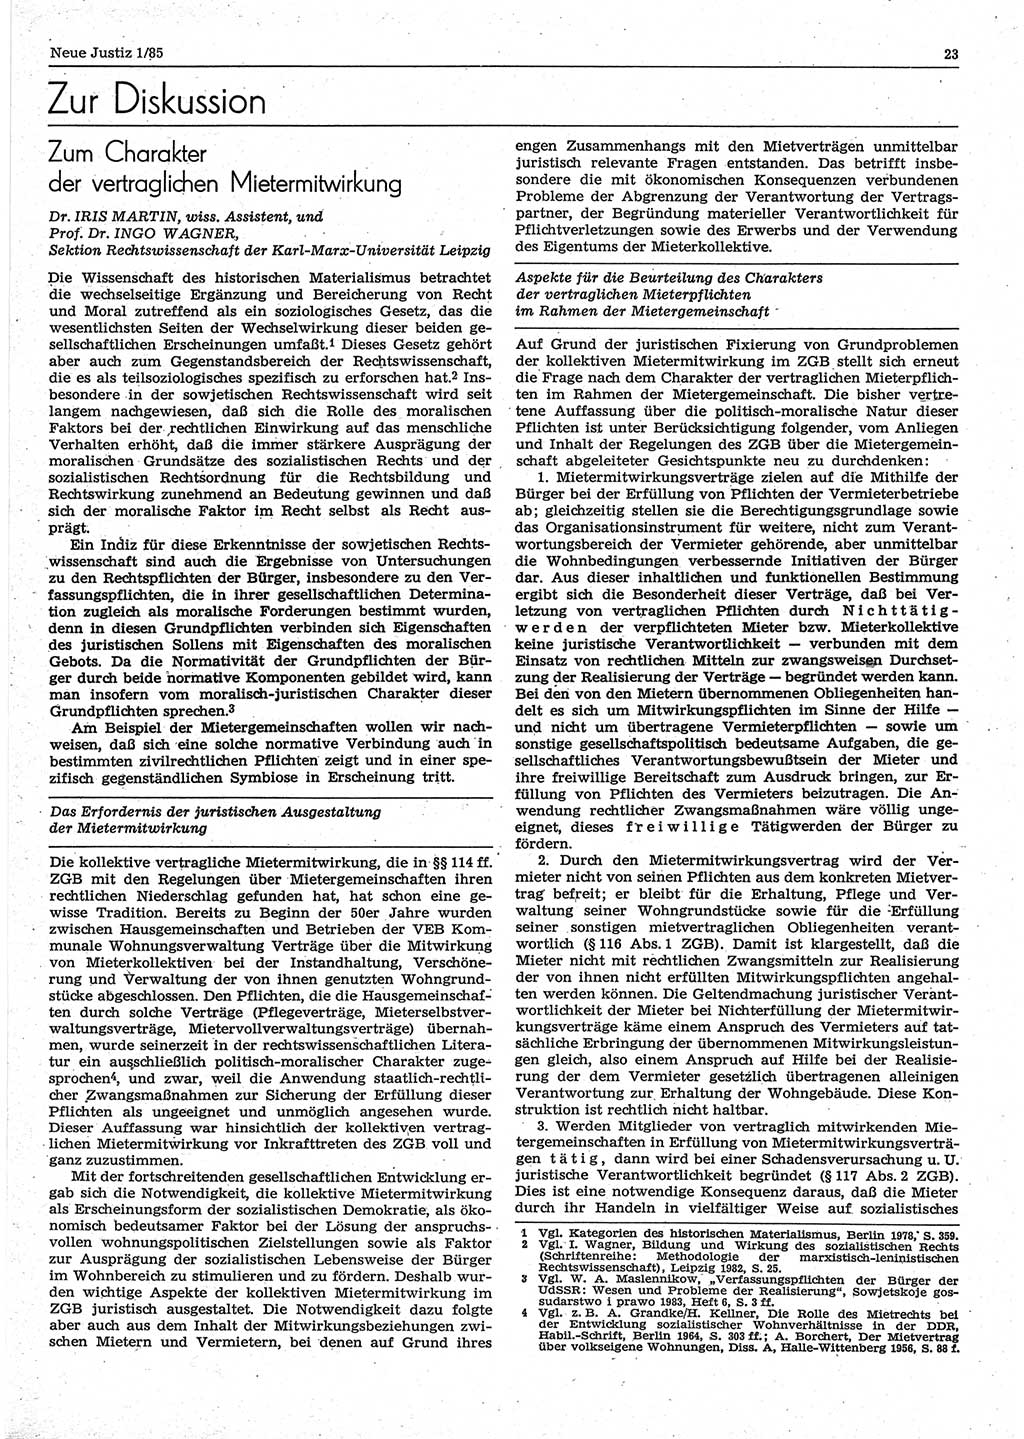 Neue Justiz (NJ), Zeitschrift für sozialistisches Recht und Gesetzlichkeit [Deutsche Demokratische Republik (DDR)], 39. Jahrgang 1985, Seite 23 (NJ DDR 1985, S. 23)